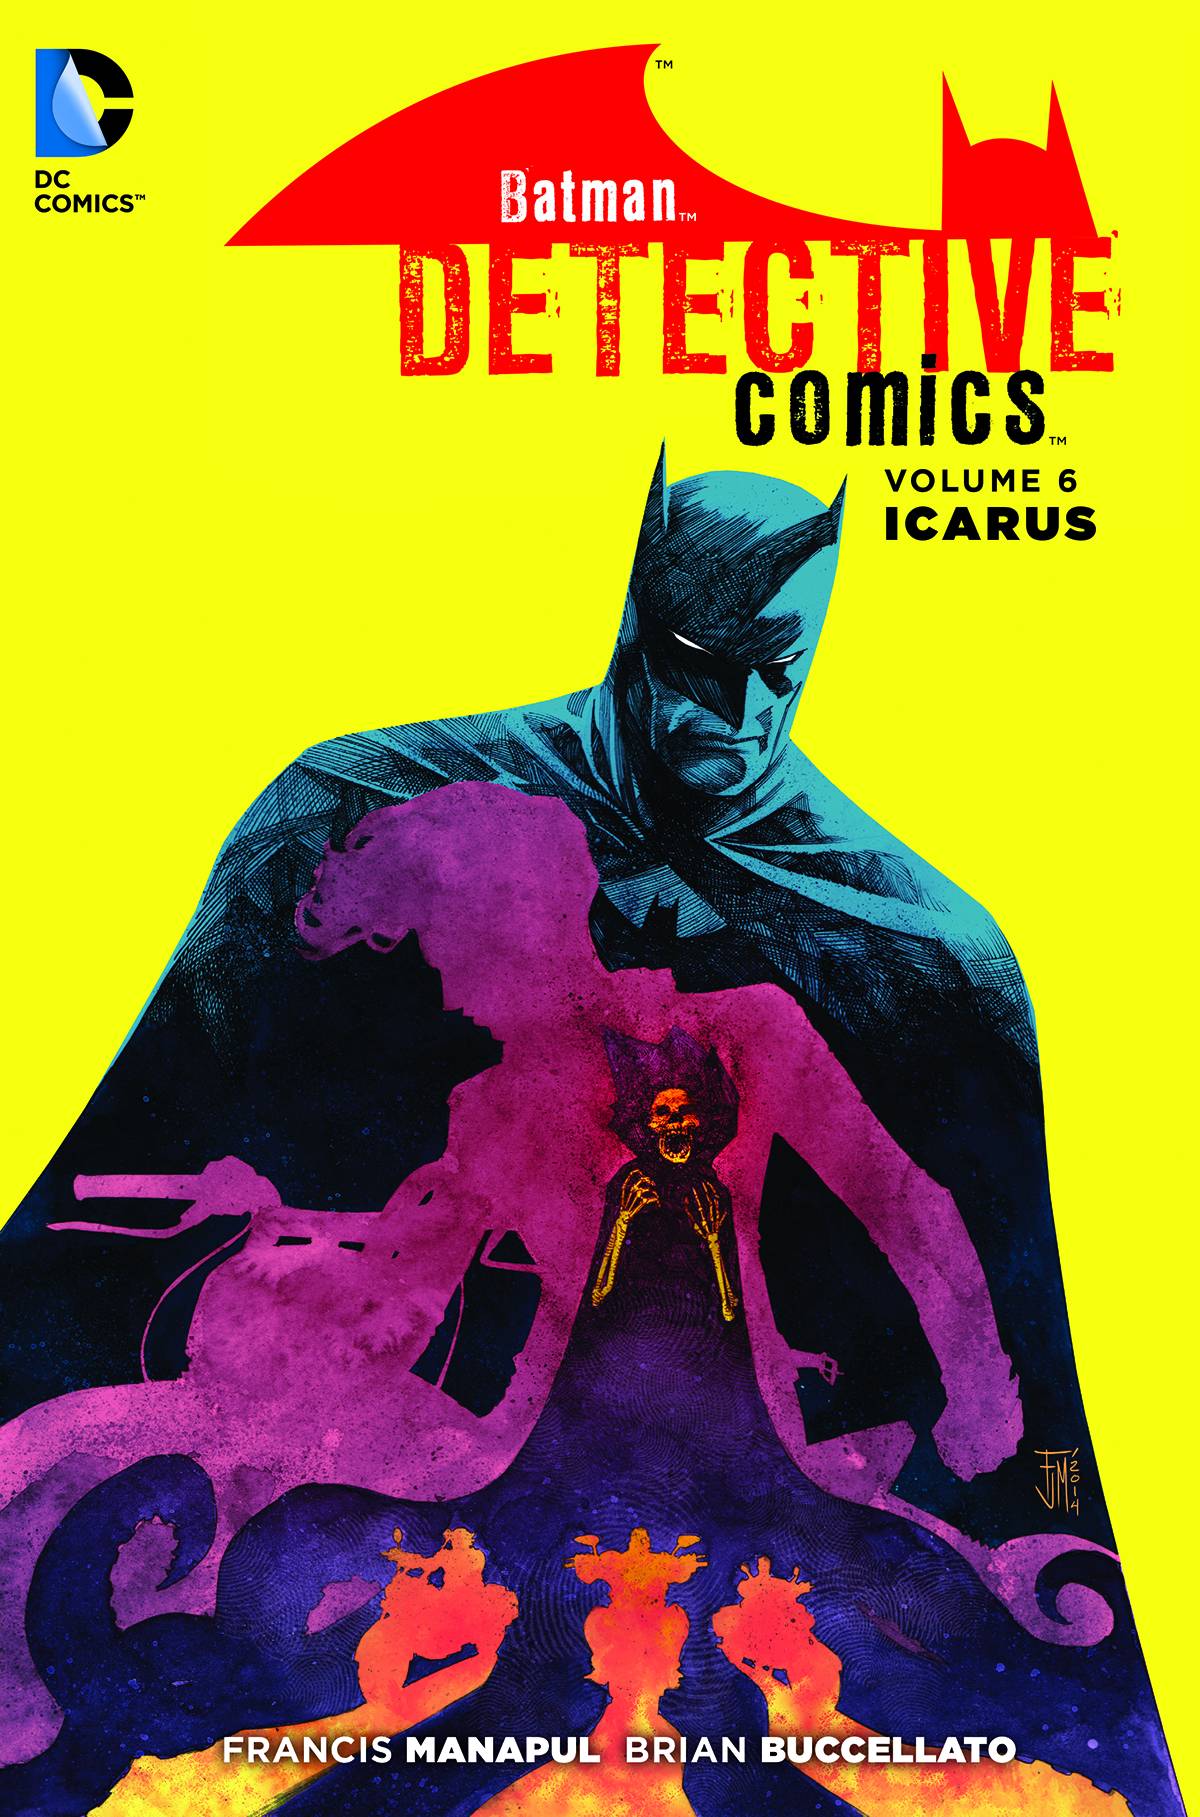 BATMAN in DETECTIVE COMICS (New 52) VOL 06: ICARUS